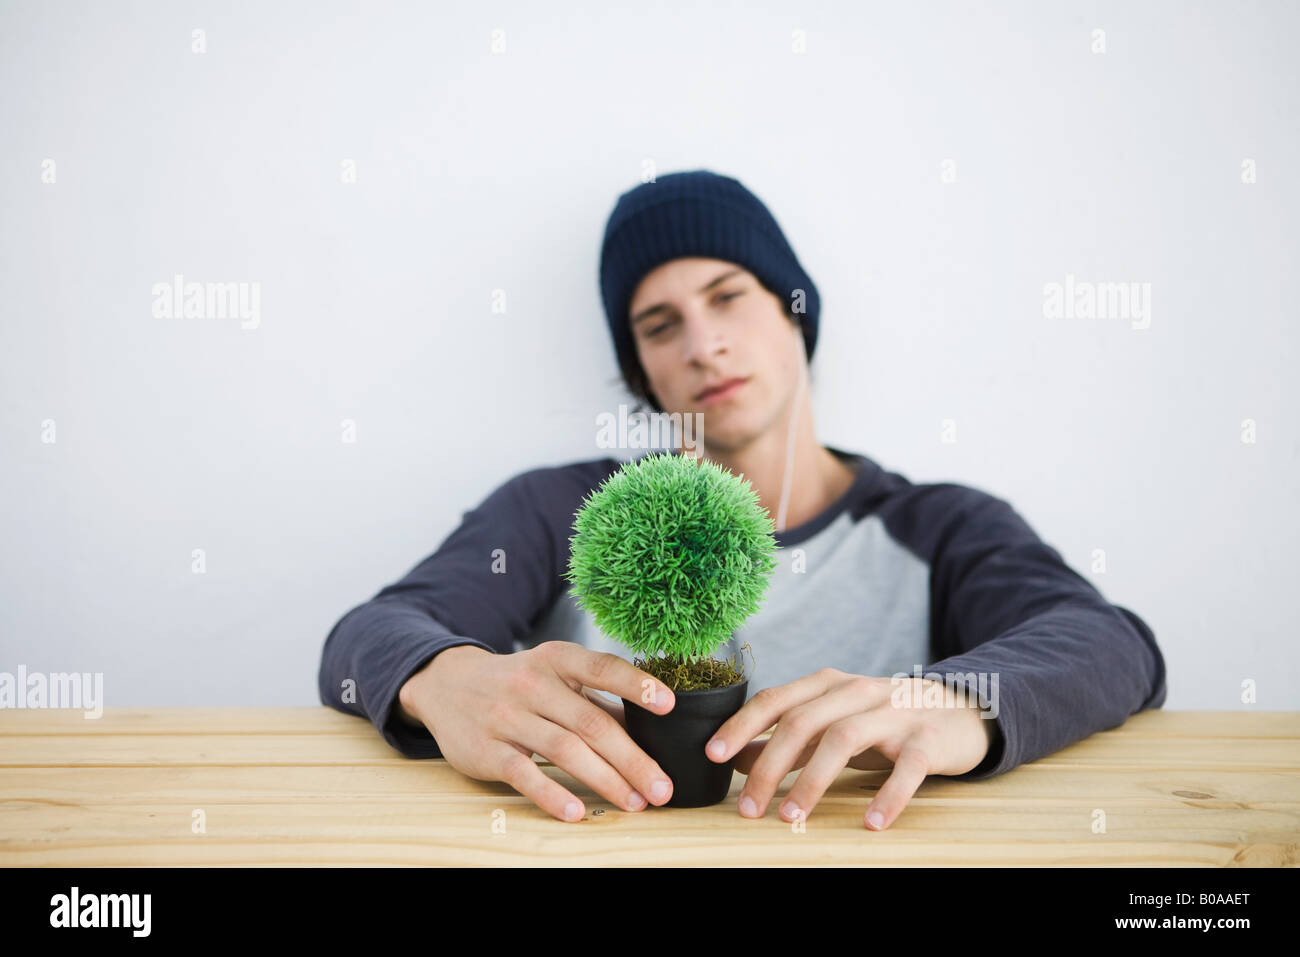 Young man sitting at table, holding bonsai, looking at camera Stock Photo